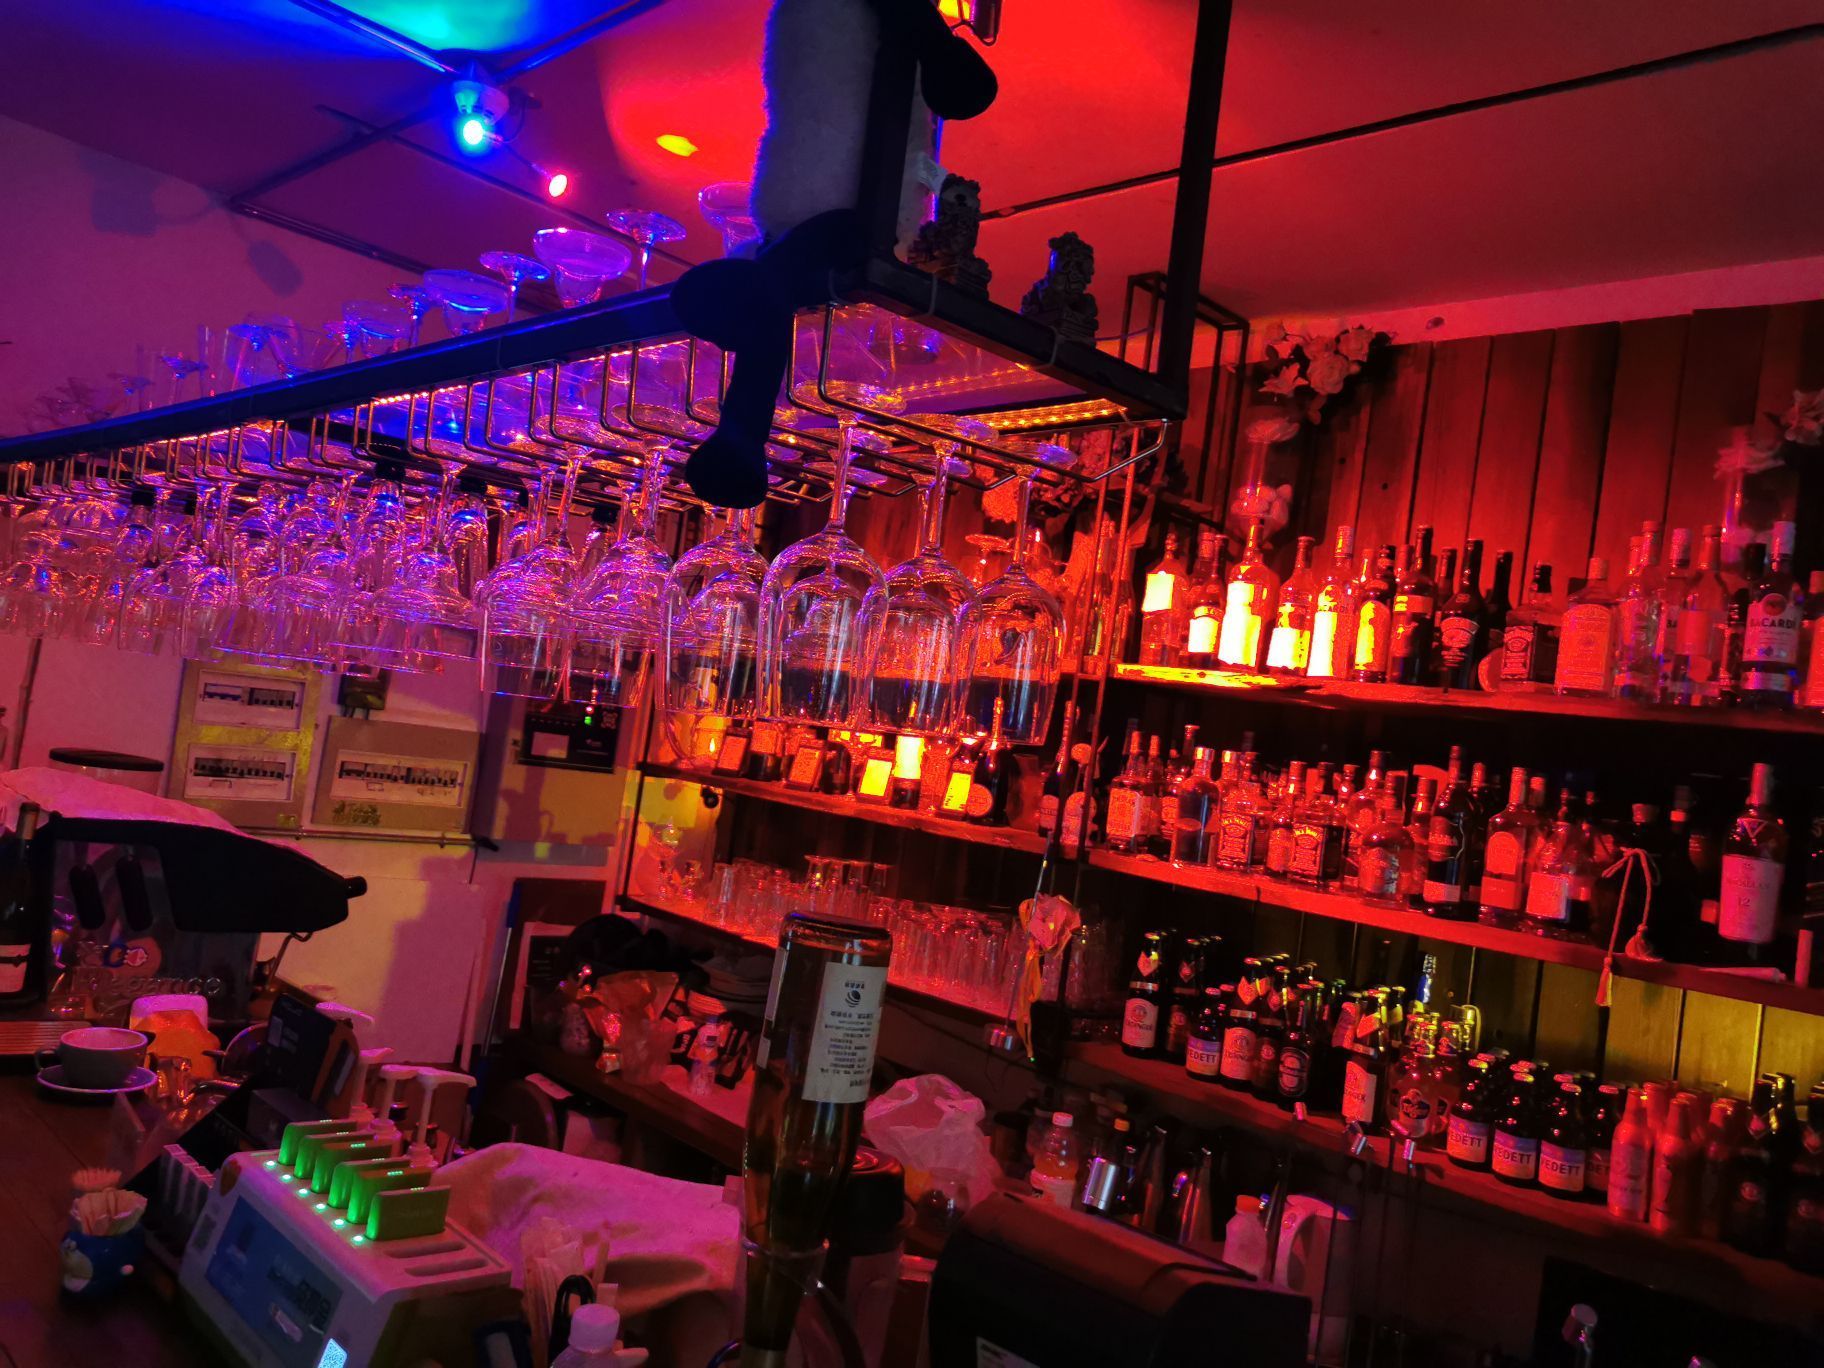 重庆公社酒吧图片